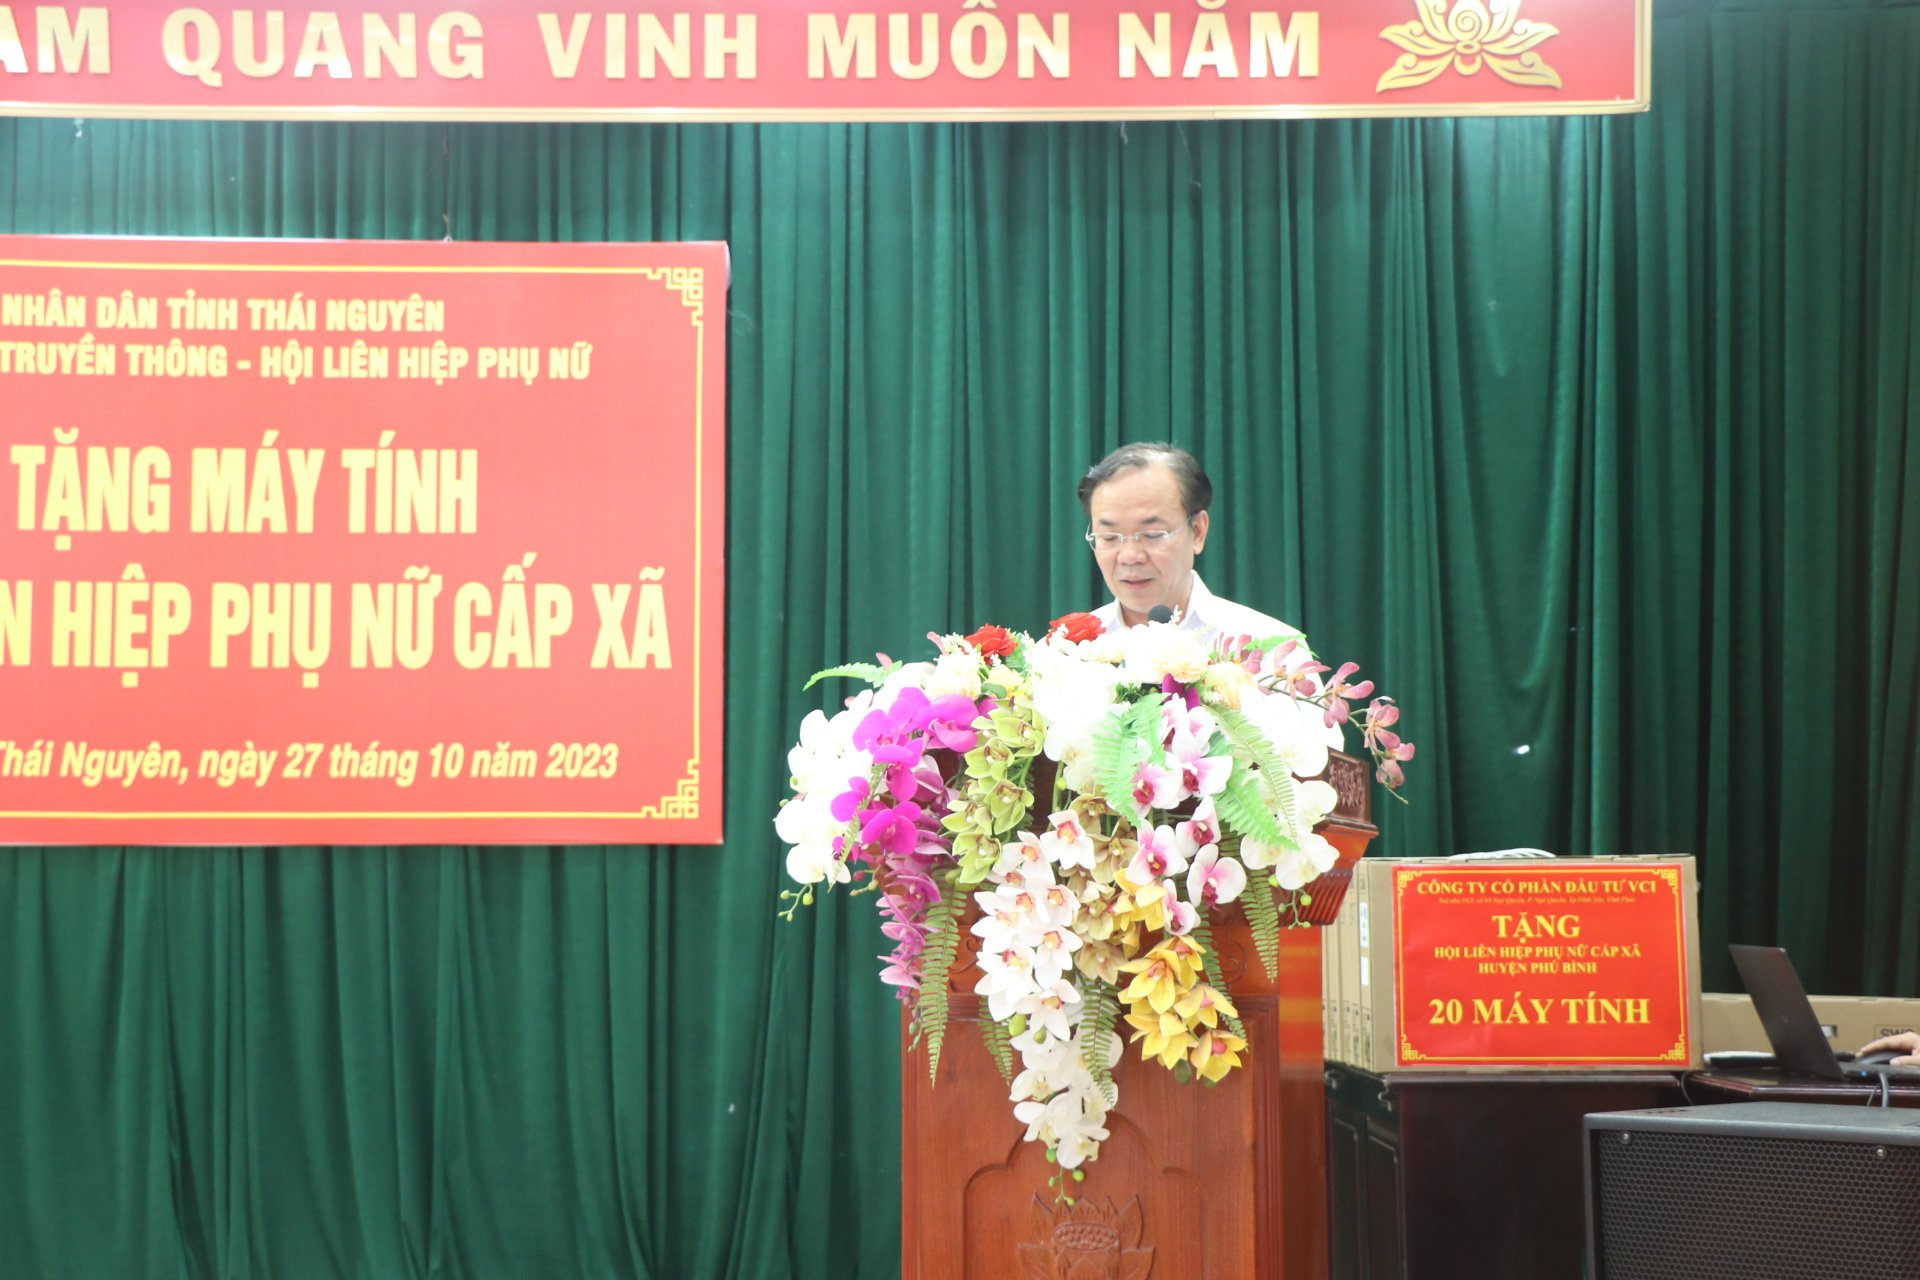 Nâng cao vai trò chuyển đổi số ở Thái Nguyên: Tặng 166 máy tính cho Hội Liên hiệp phụ nữ cấp xã - Ảnh 3.